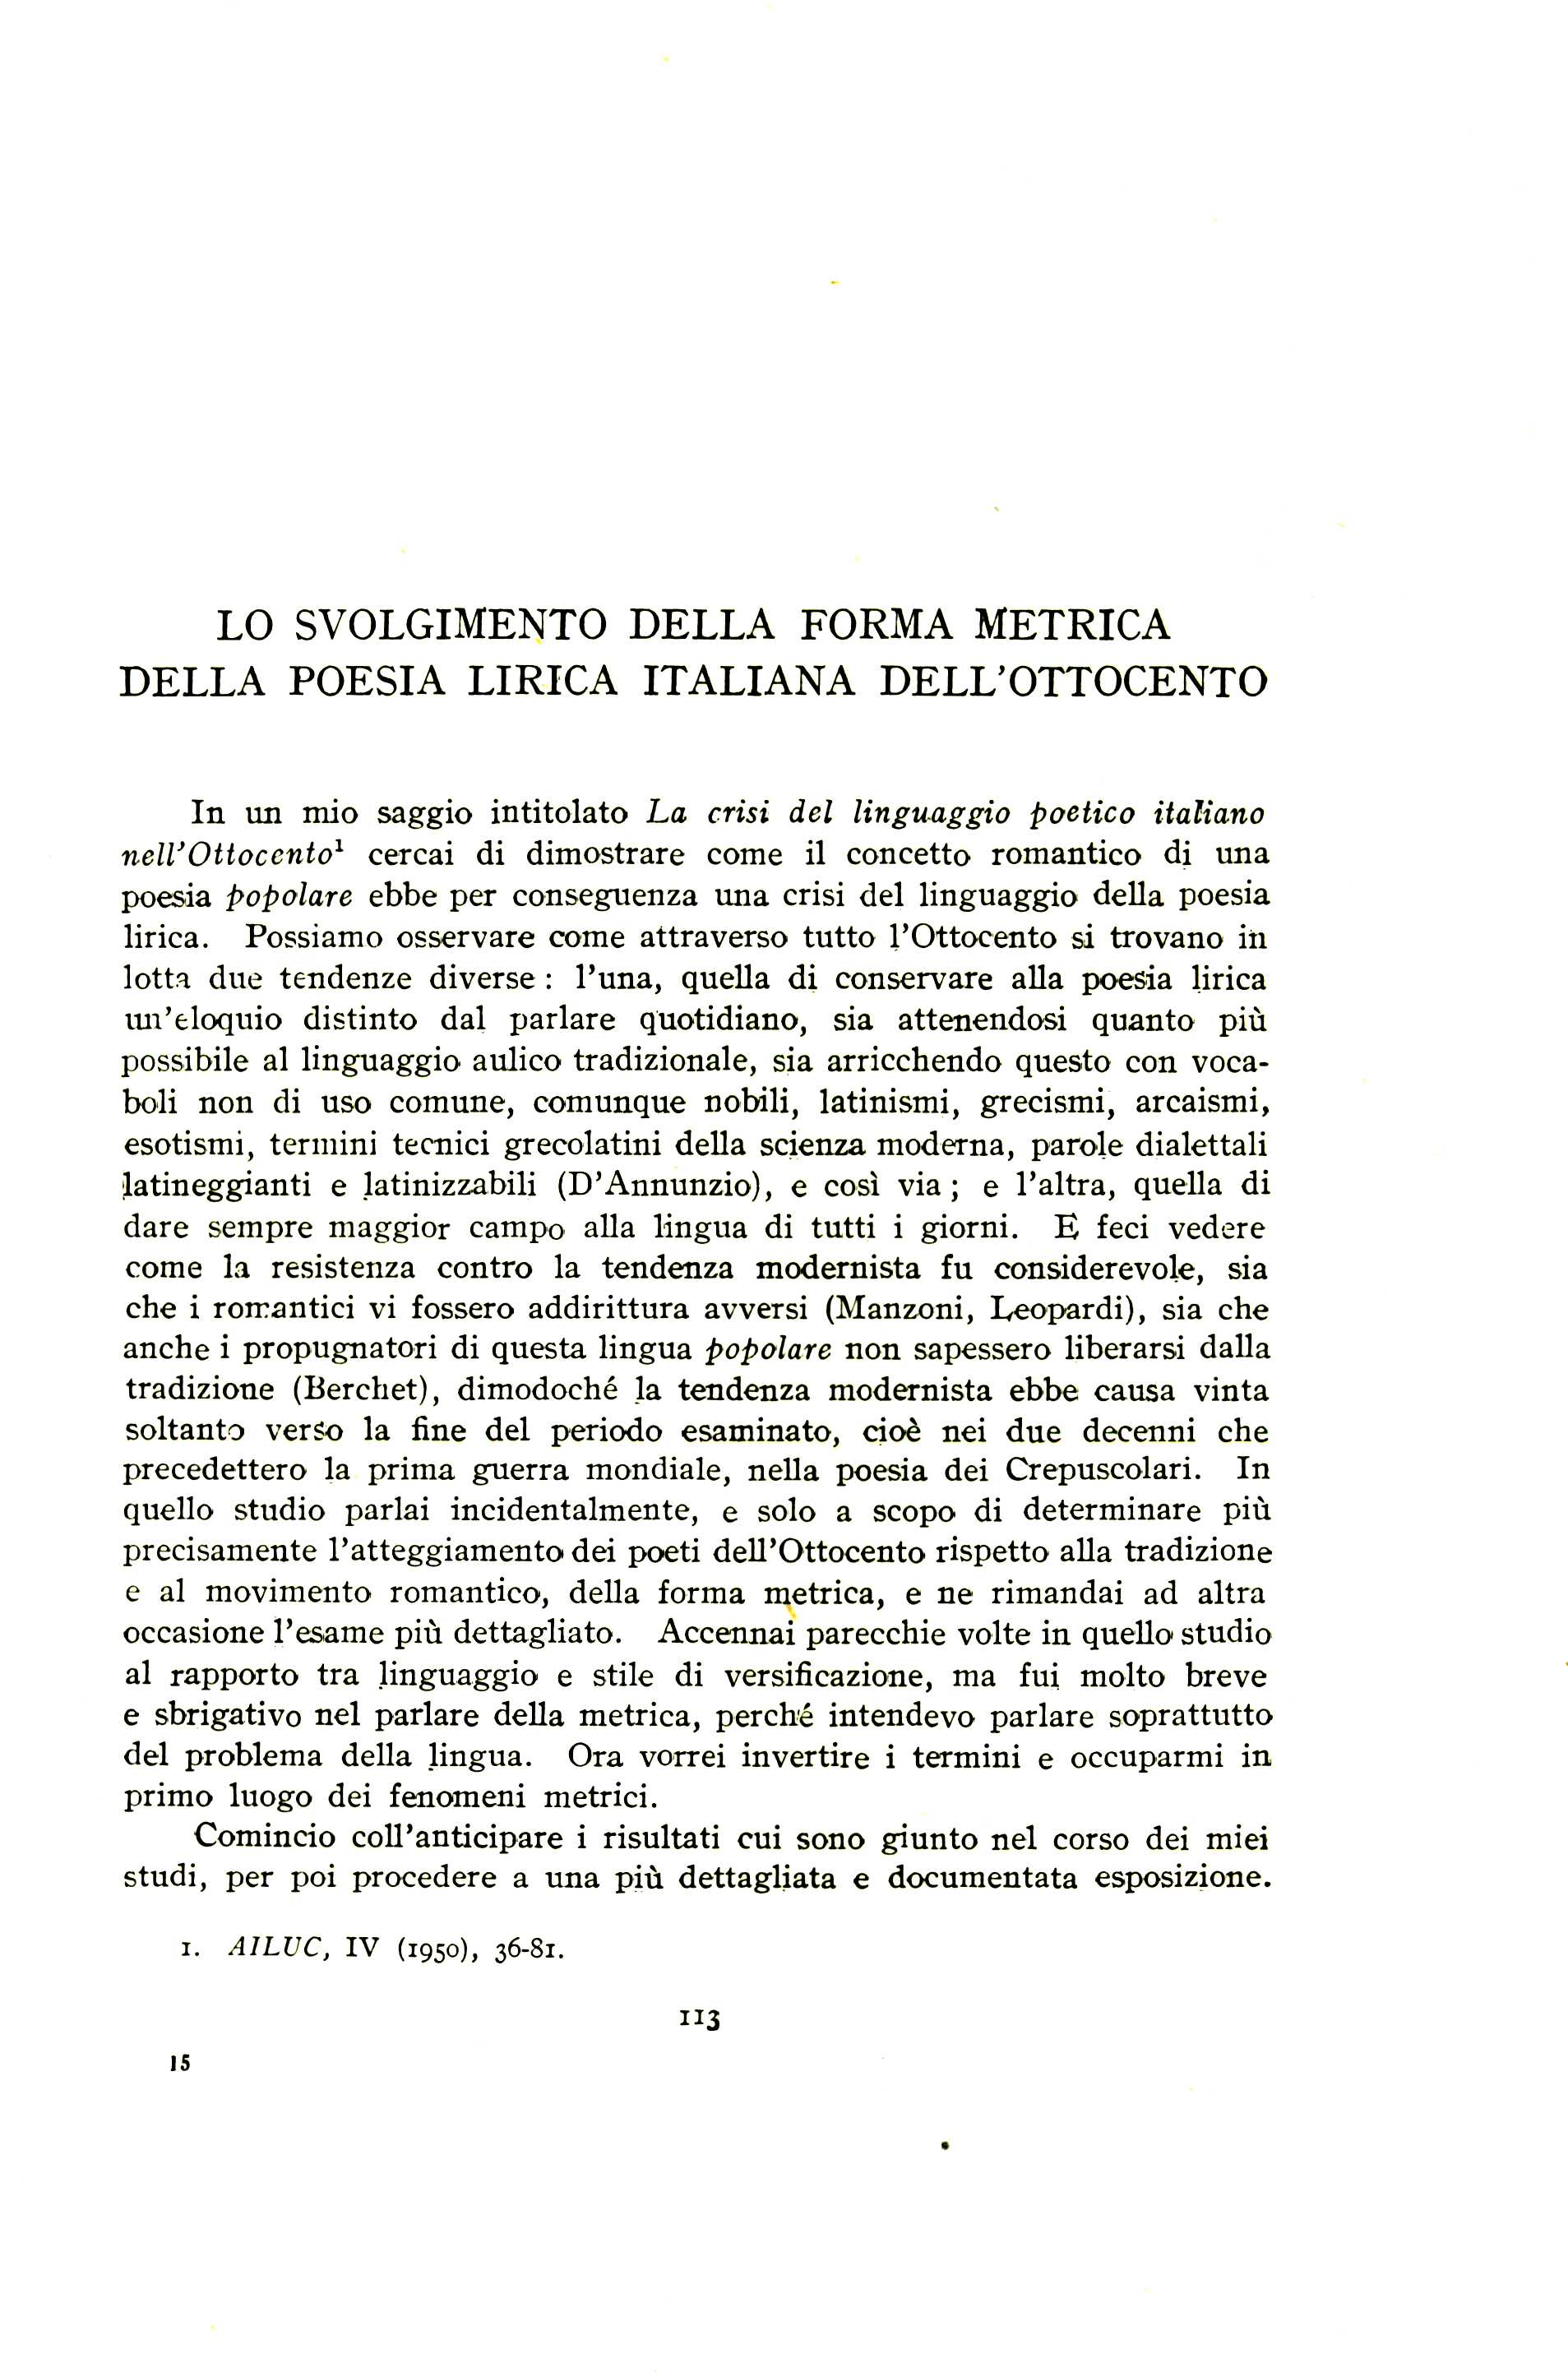 LO SVOLGIMENTO DELLA FORMA METRICA DELLA POESIA LIRICA ITALIANA DELL'OTTOCENTO In an mio saggio intitolato La crisi del linguaggio poetico italiano nell'ottocentol cercai di dimostrare come it